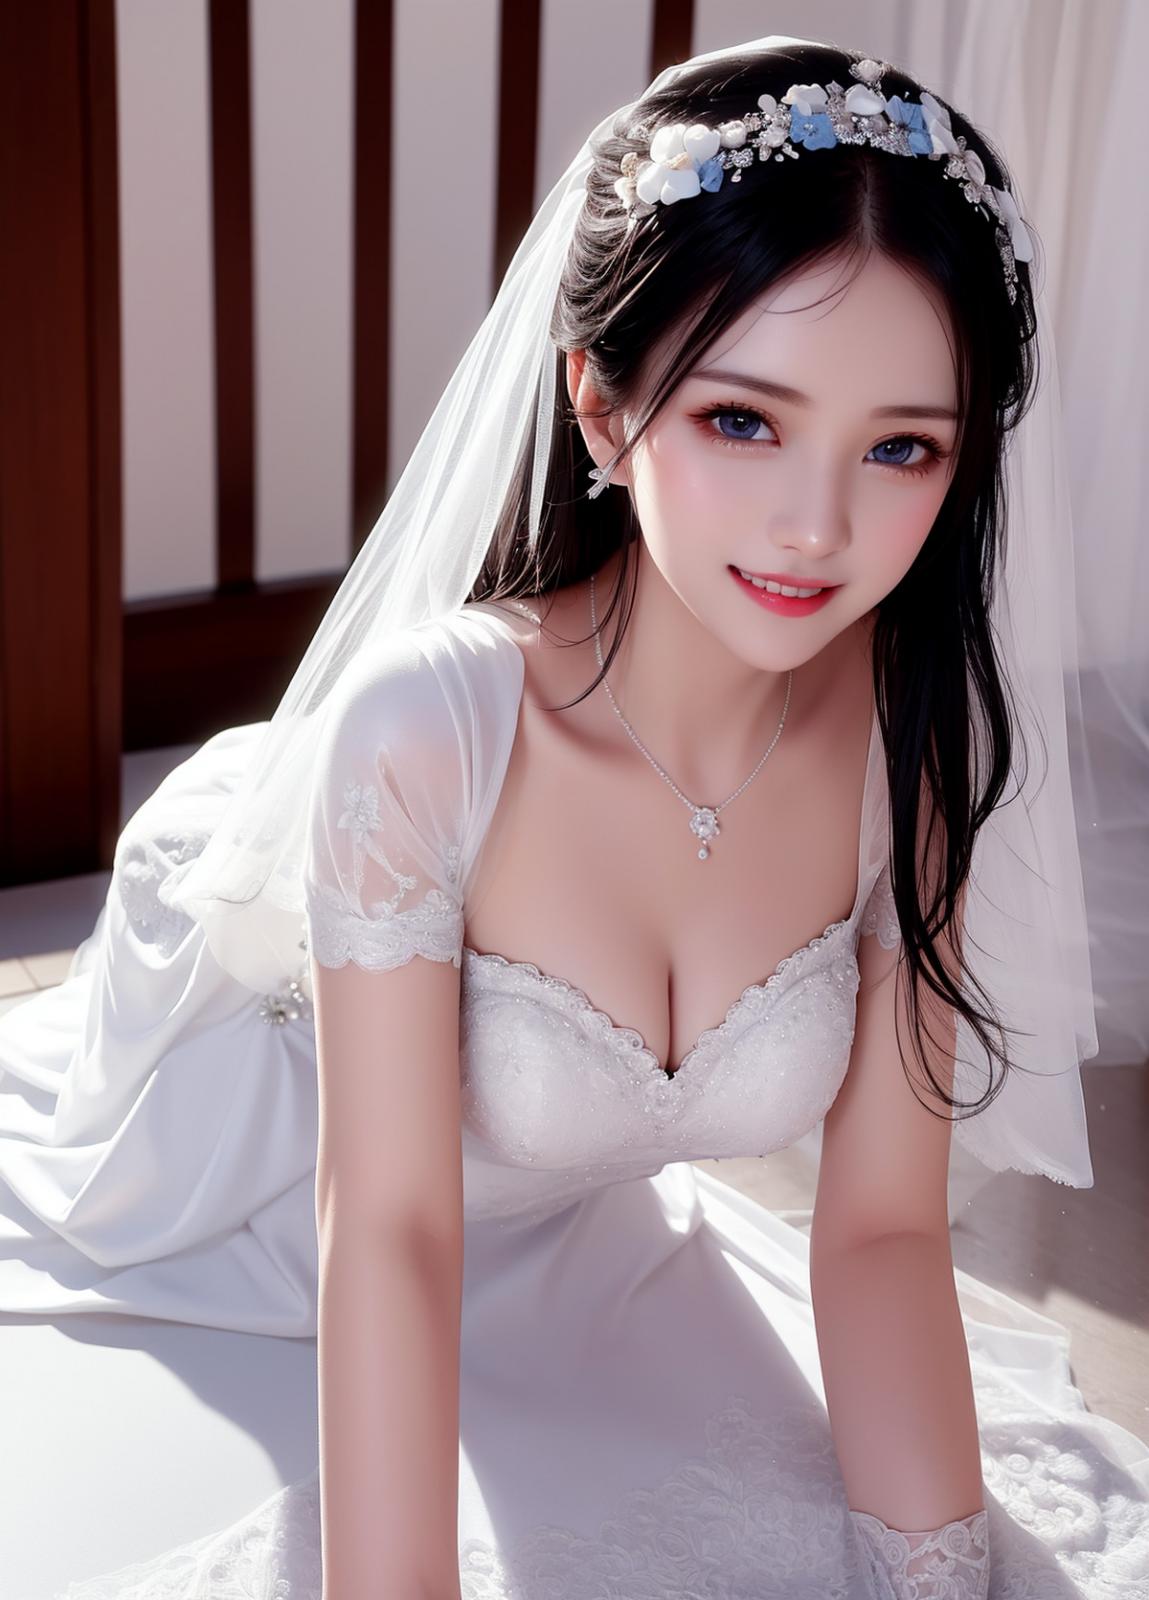 AI美图034期新娘婚纱主题性感白色低胸婚纱裙秀完美身材写真及下载116P